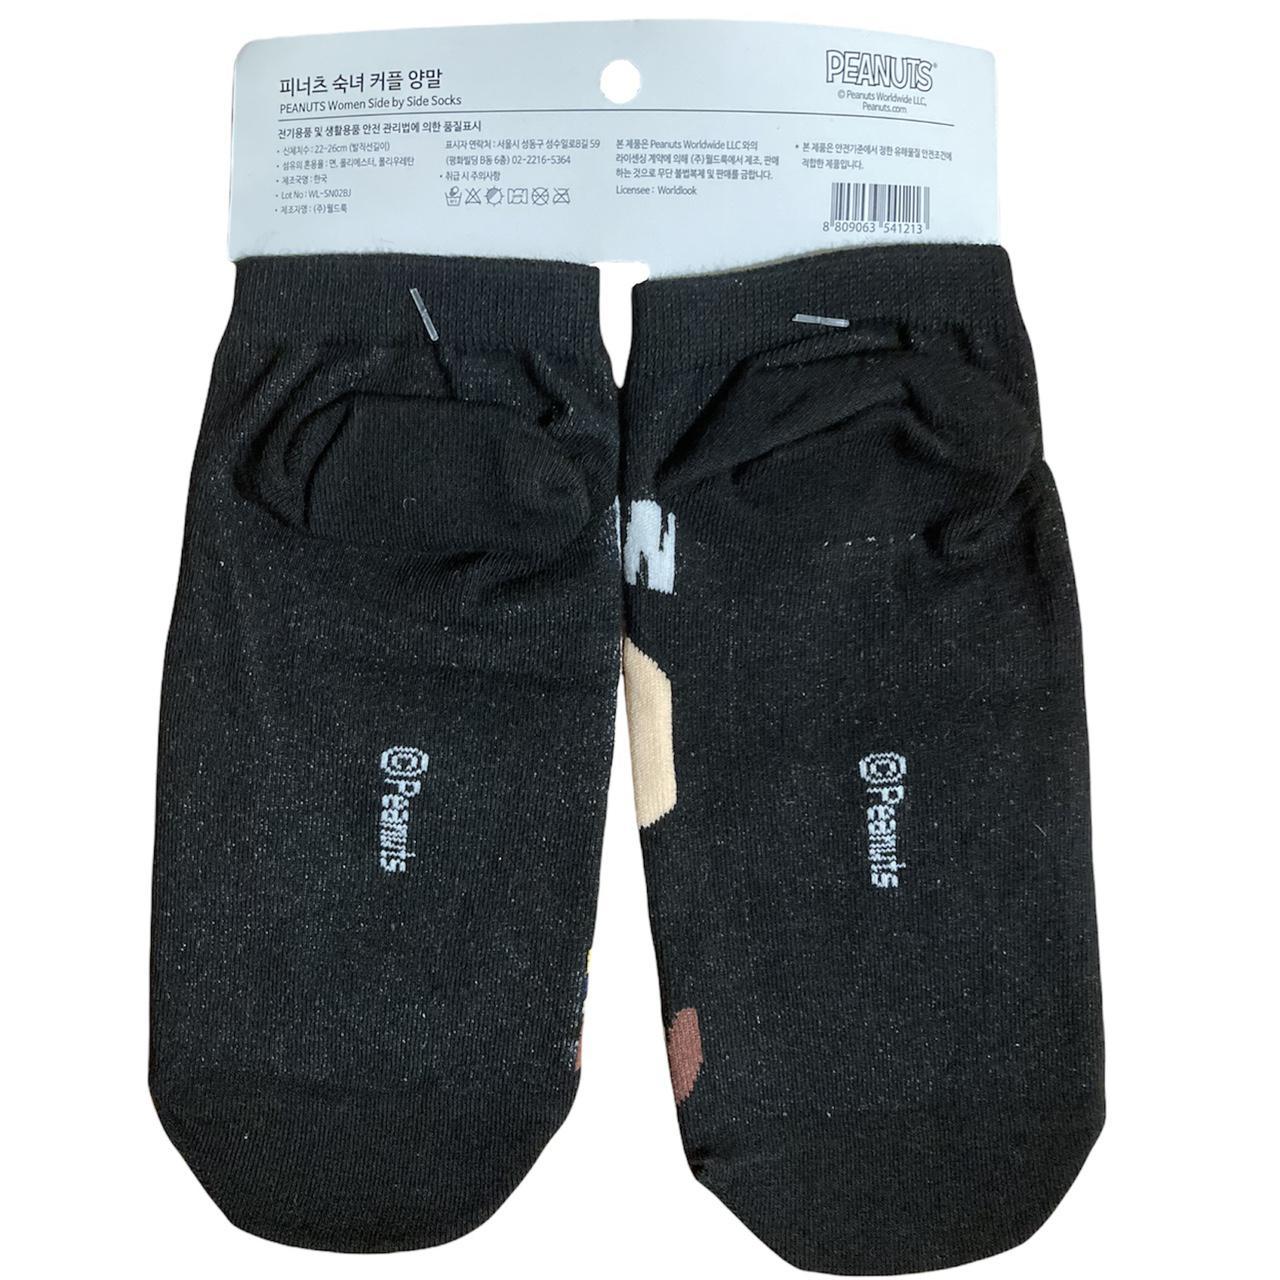 Women's Grey Socks (2)